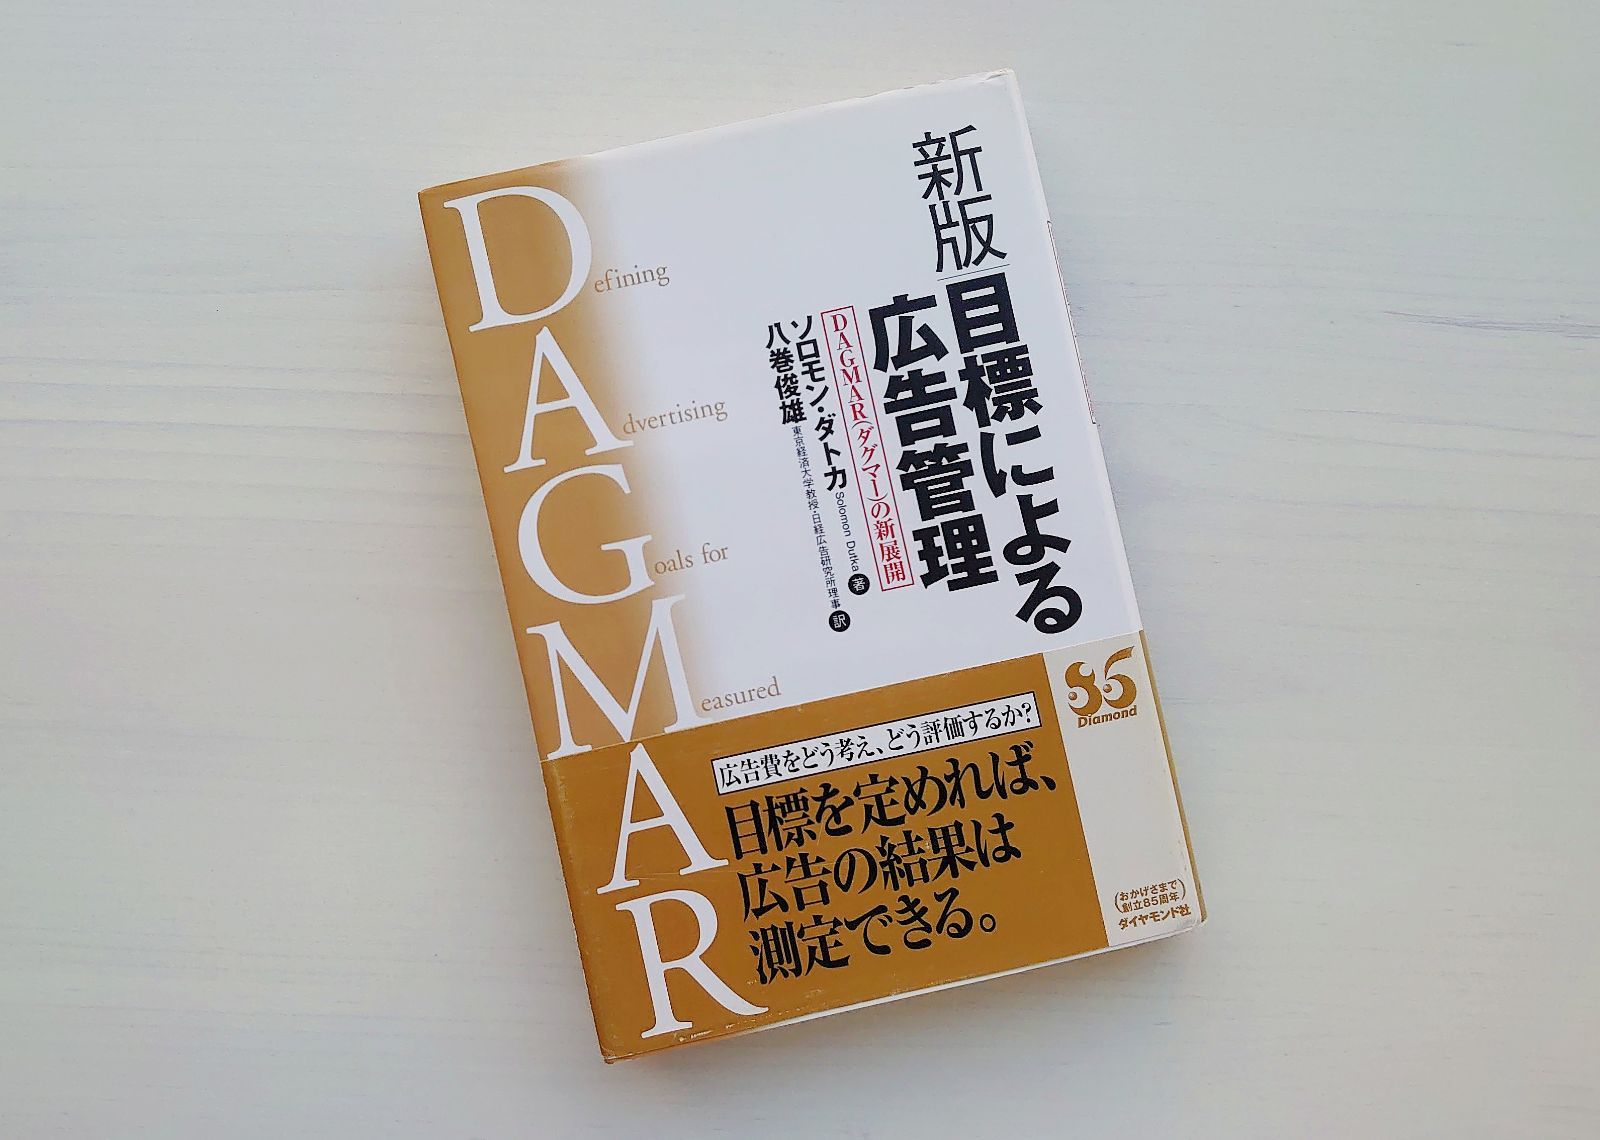 新版 目標による広告管理―DAGMAR（ダグマー）の新展開 - webpla books